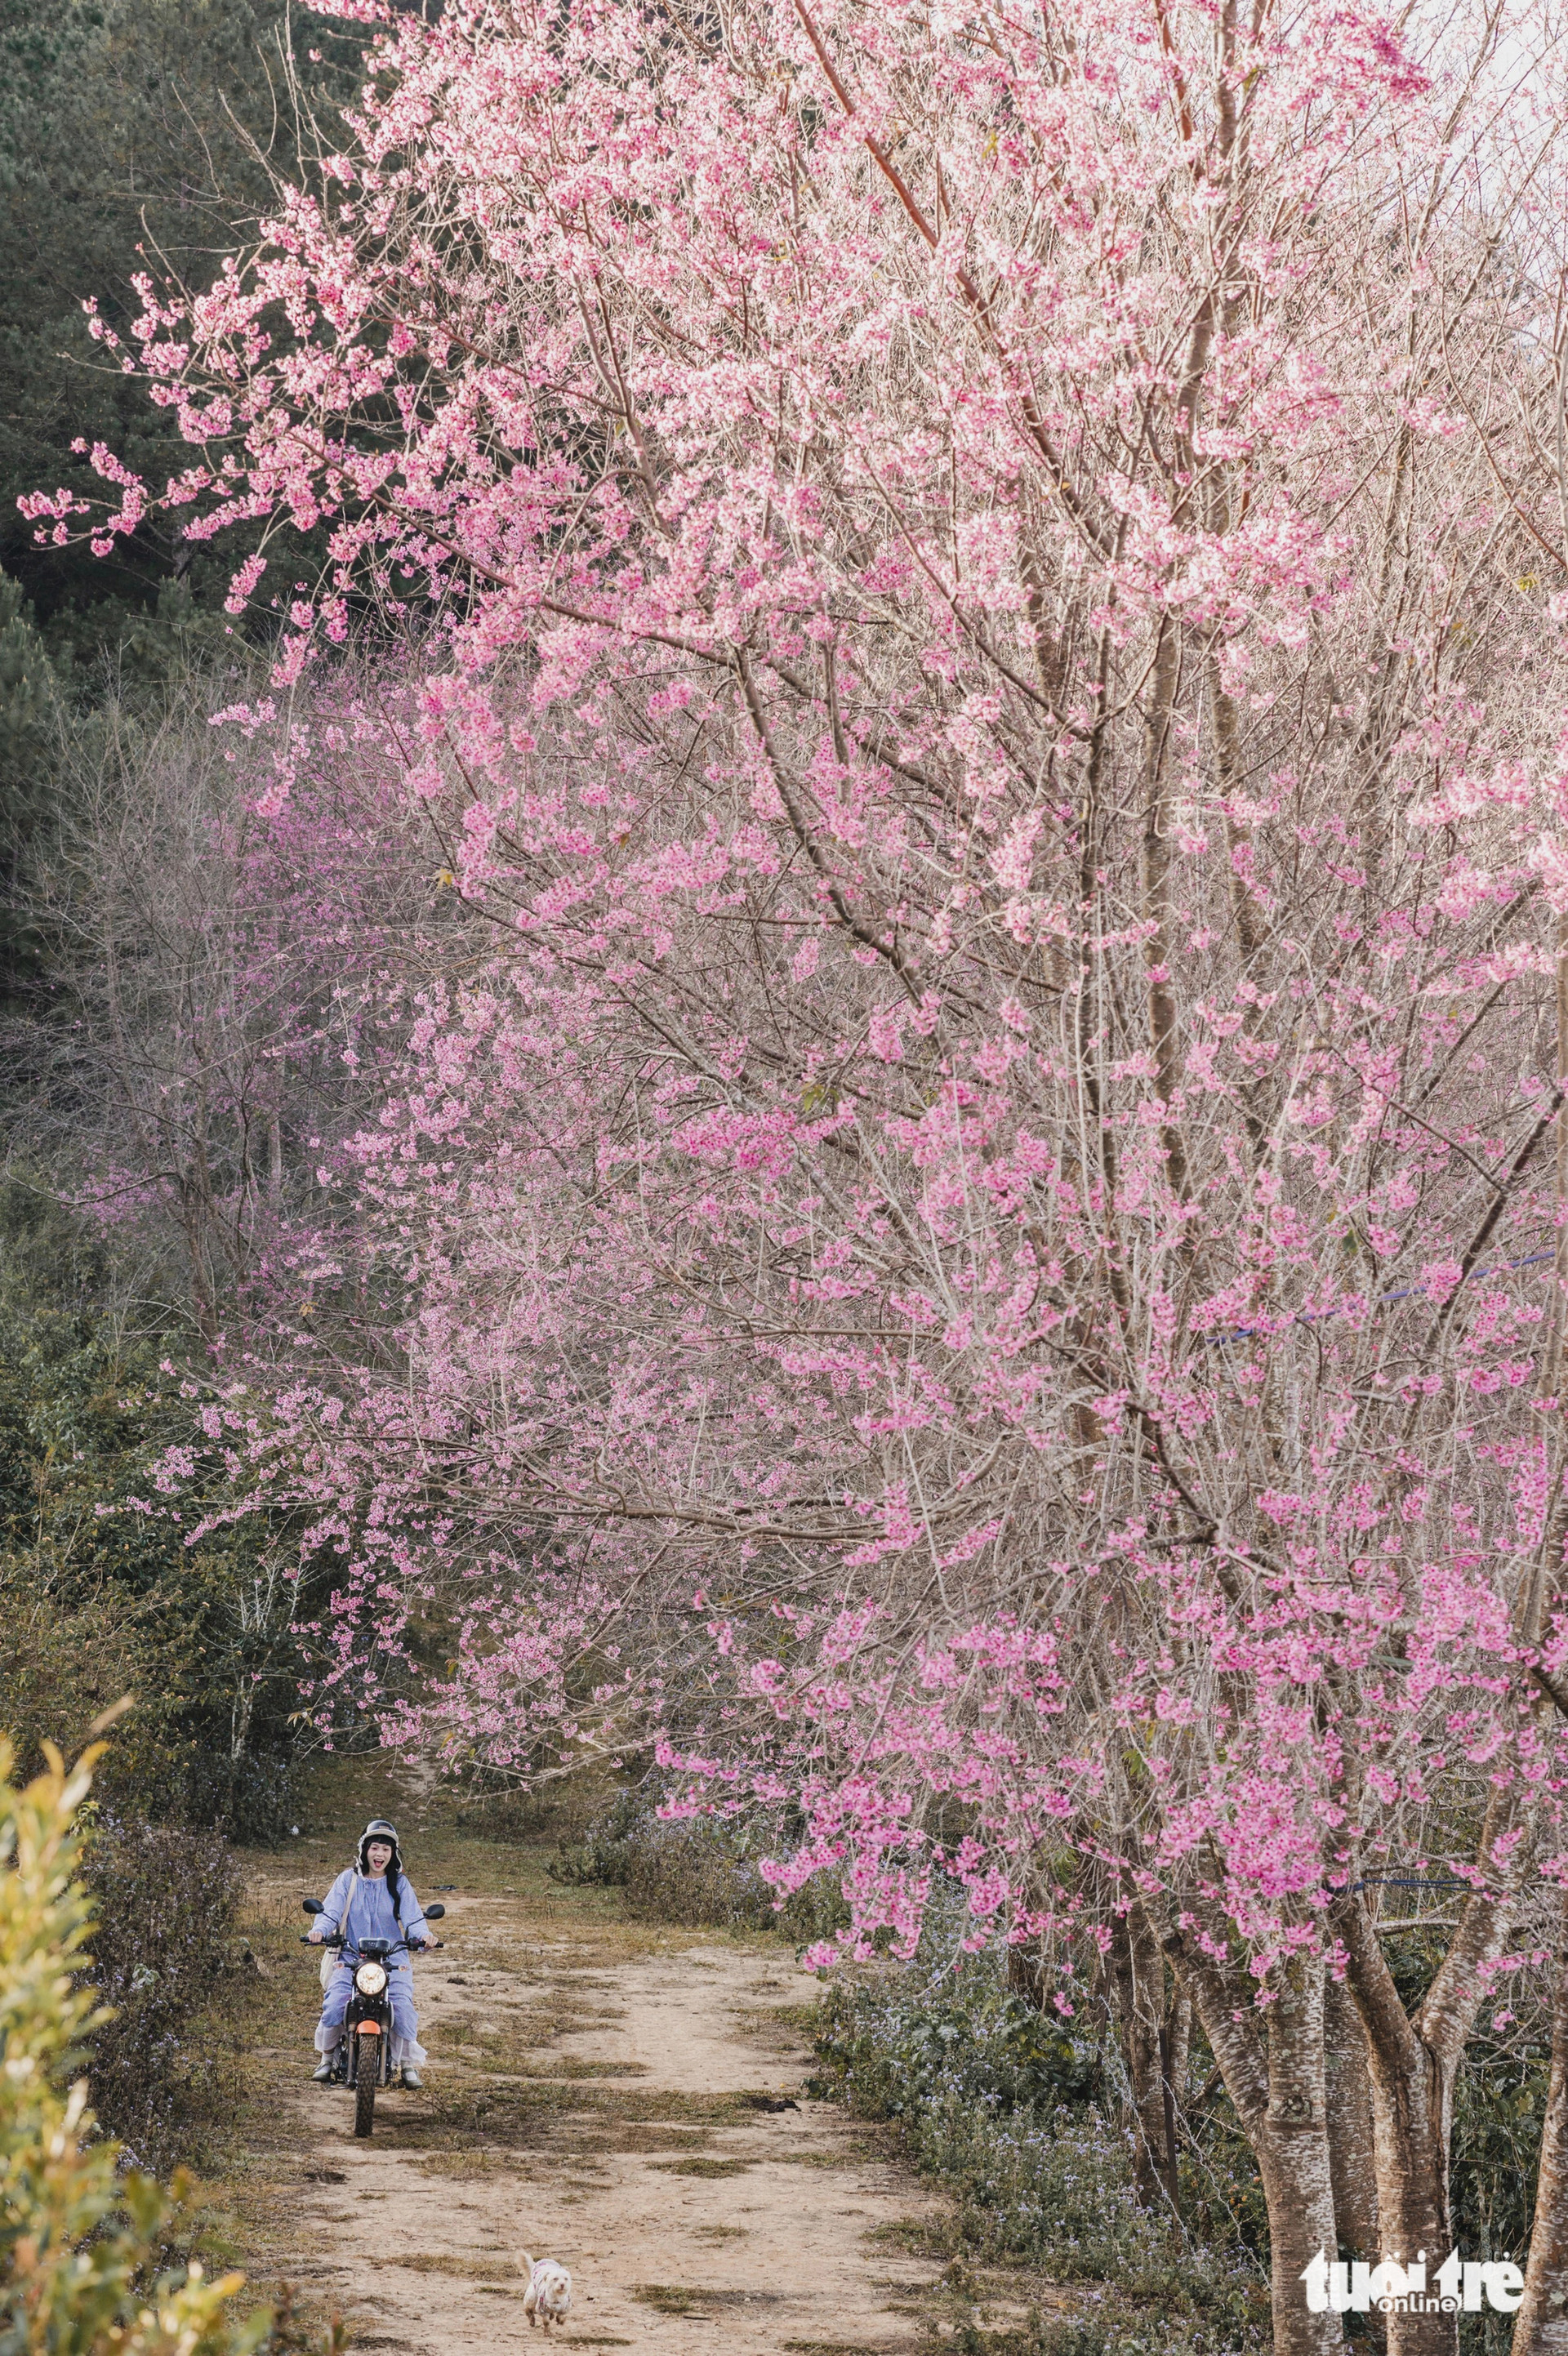 Để vào khu vực núi Langbiang ngắm hoa, du khách đi bằng các loại xe địa hình - Ảnh: QUANG ĐÀ LẠT